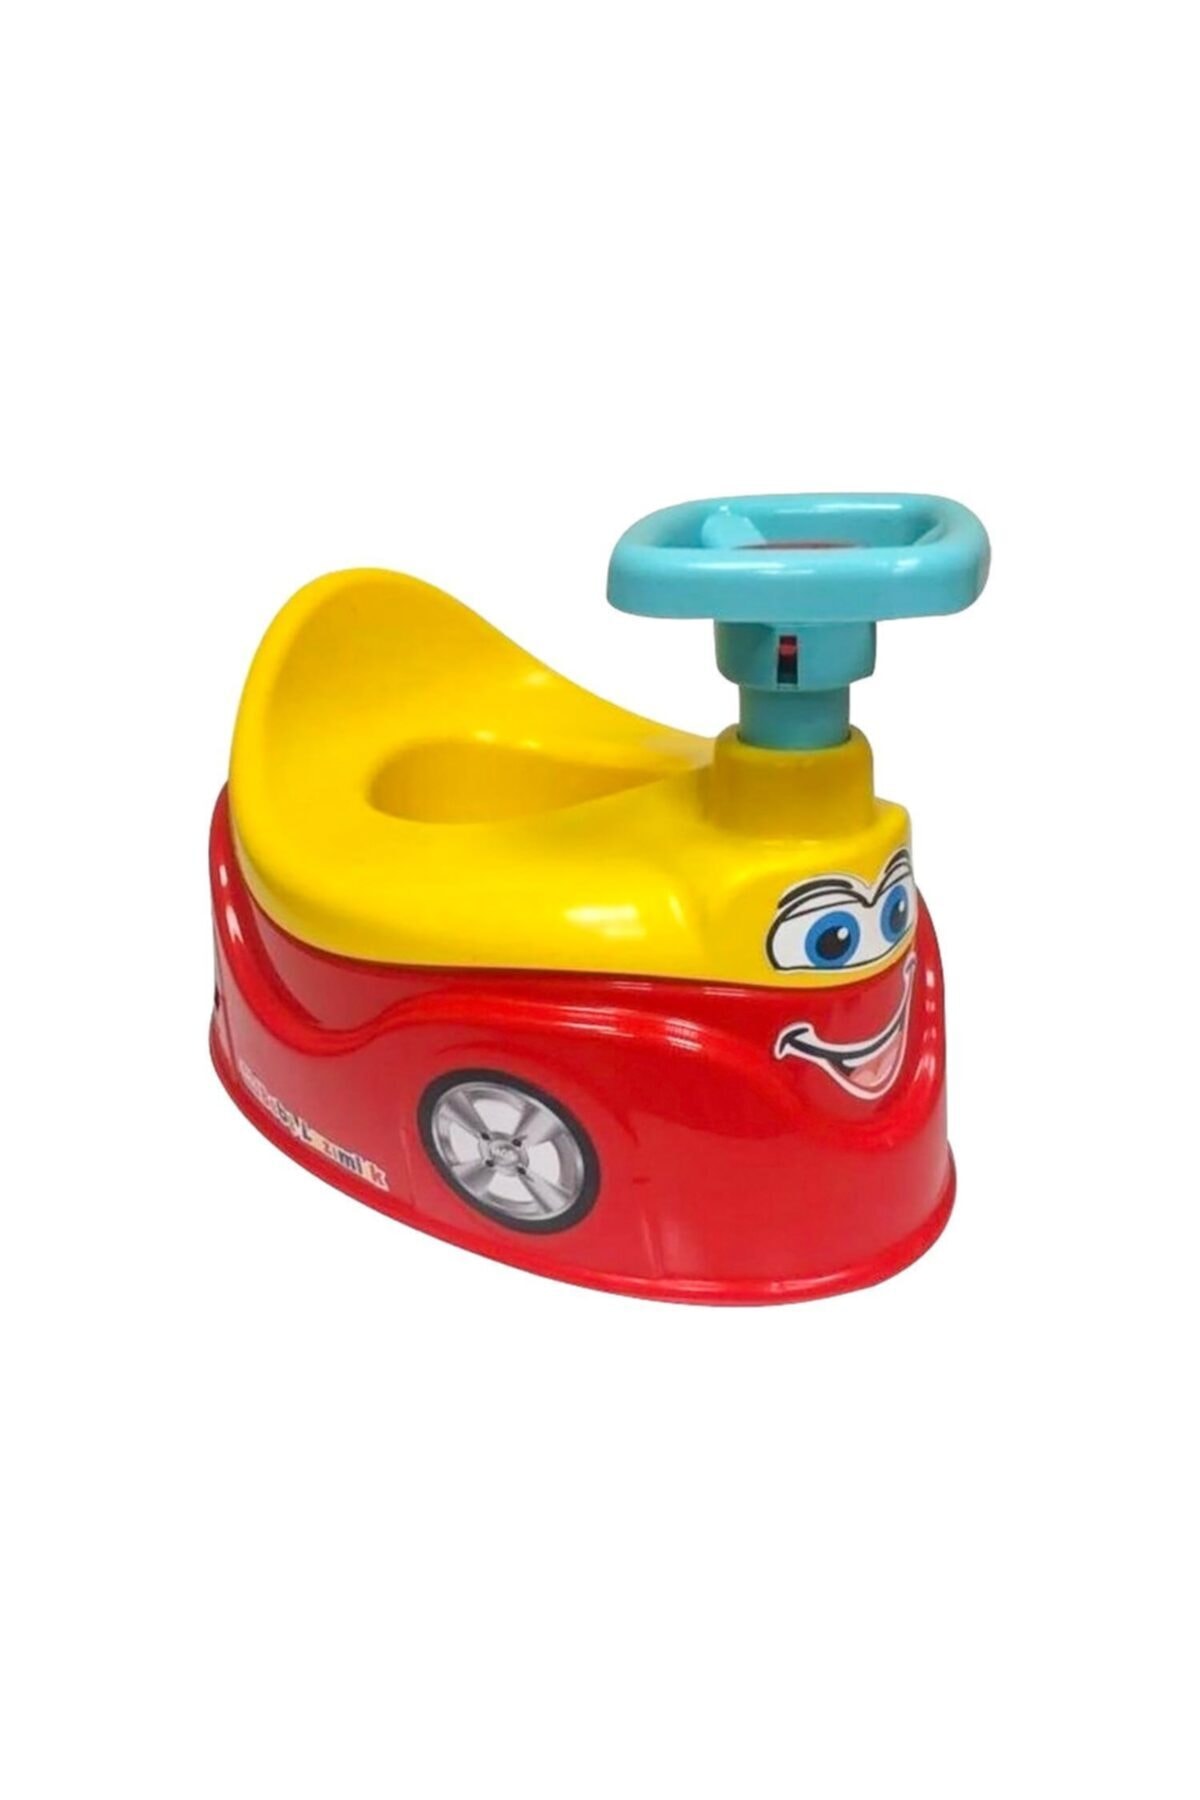 MGS OYUNCAK Mgs Araba Lazımlık Tuvalet Eğitimi Için Oyuncaklı Lazımlık Oturak - Kırmızı